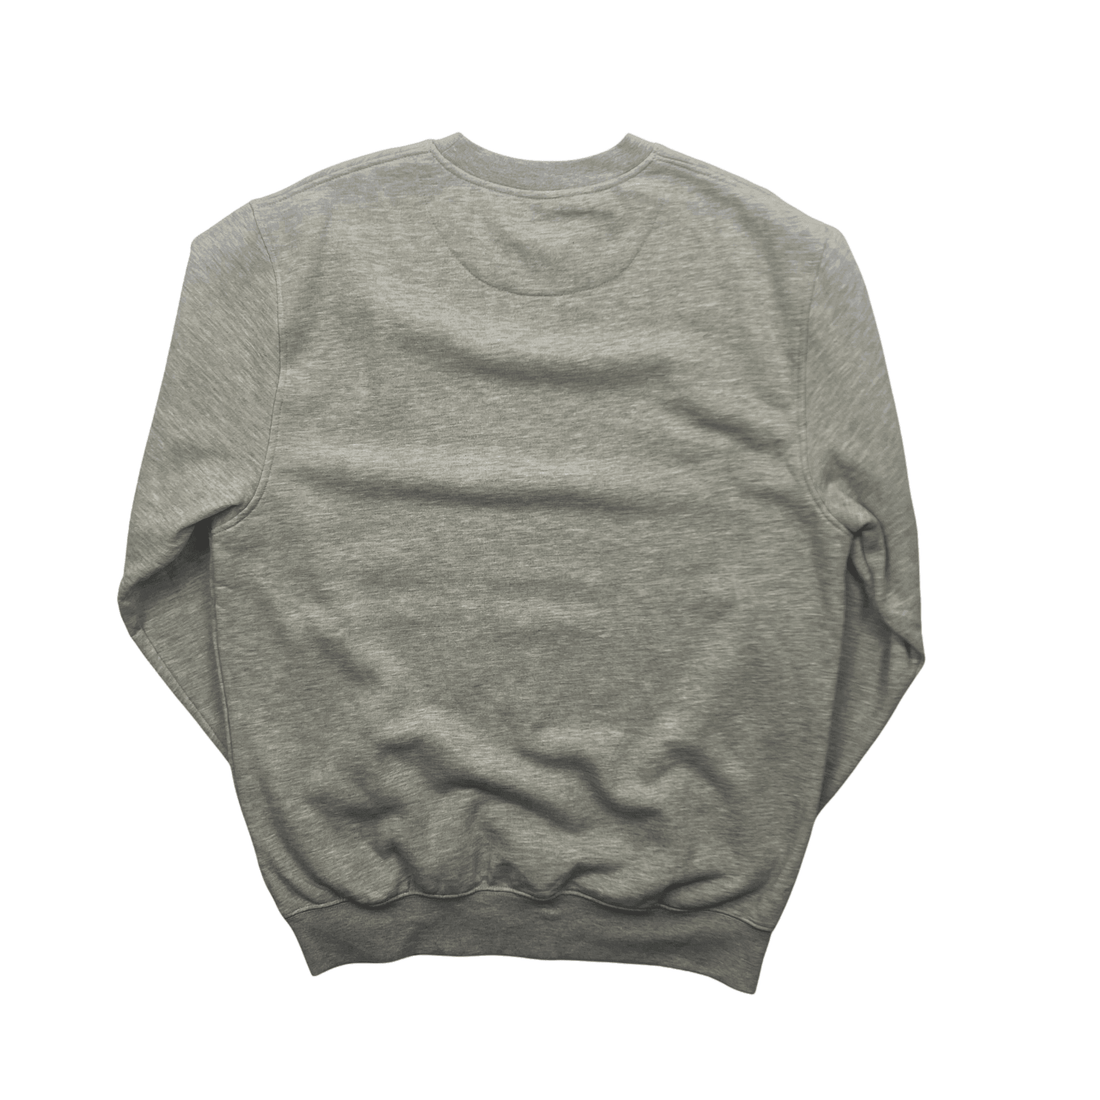 Vintage 90s Grey Nike Sweatshirt - Large - The Streetwear Studio